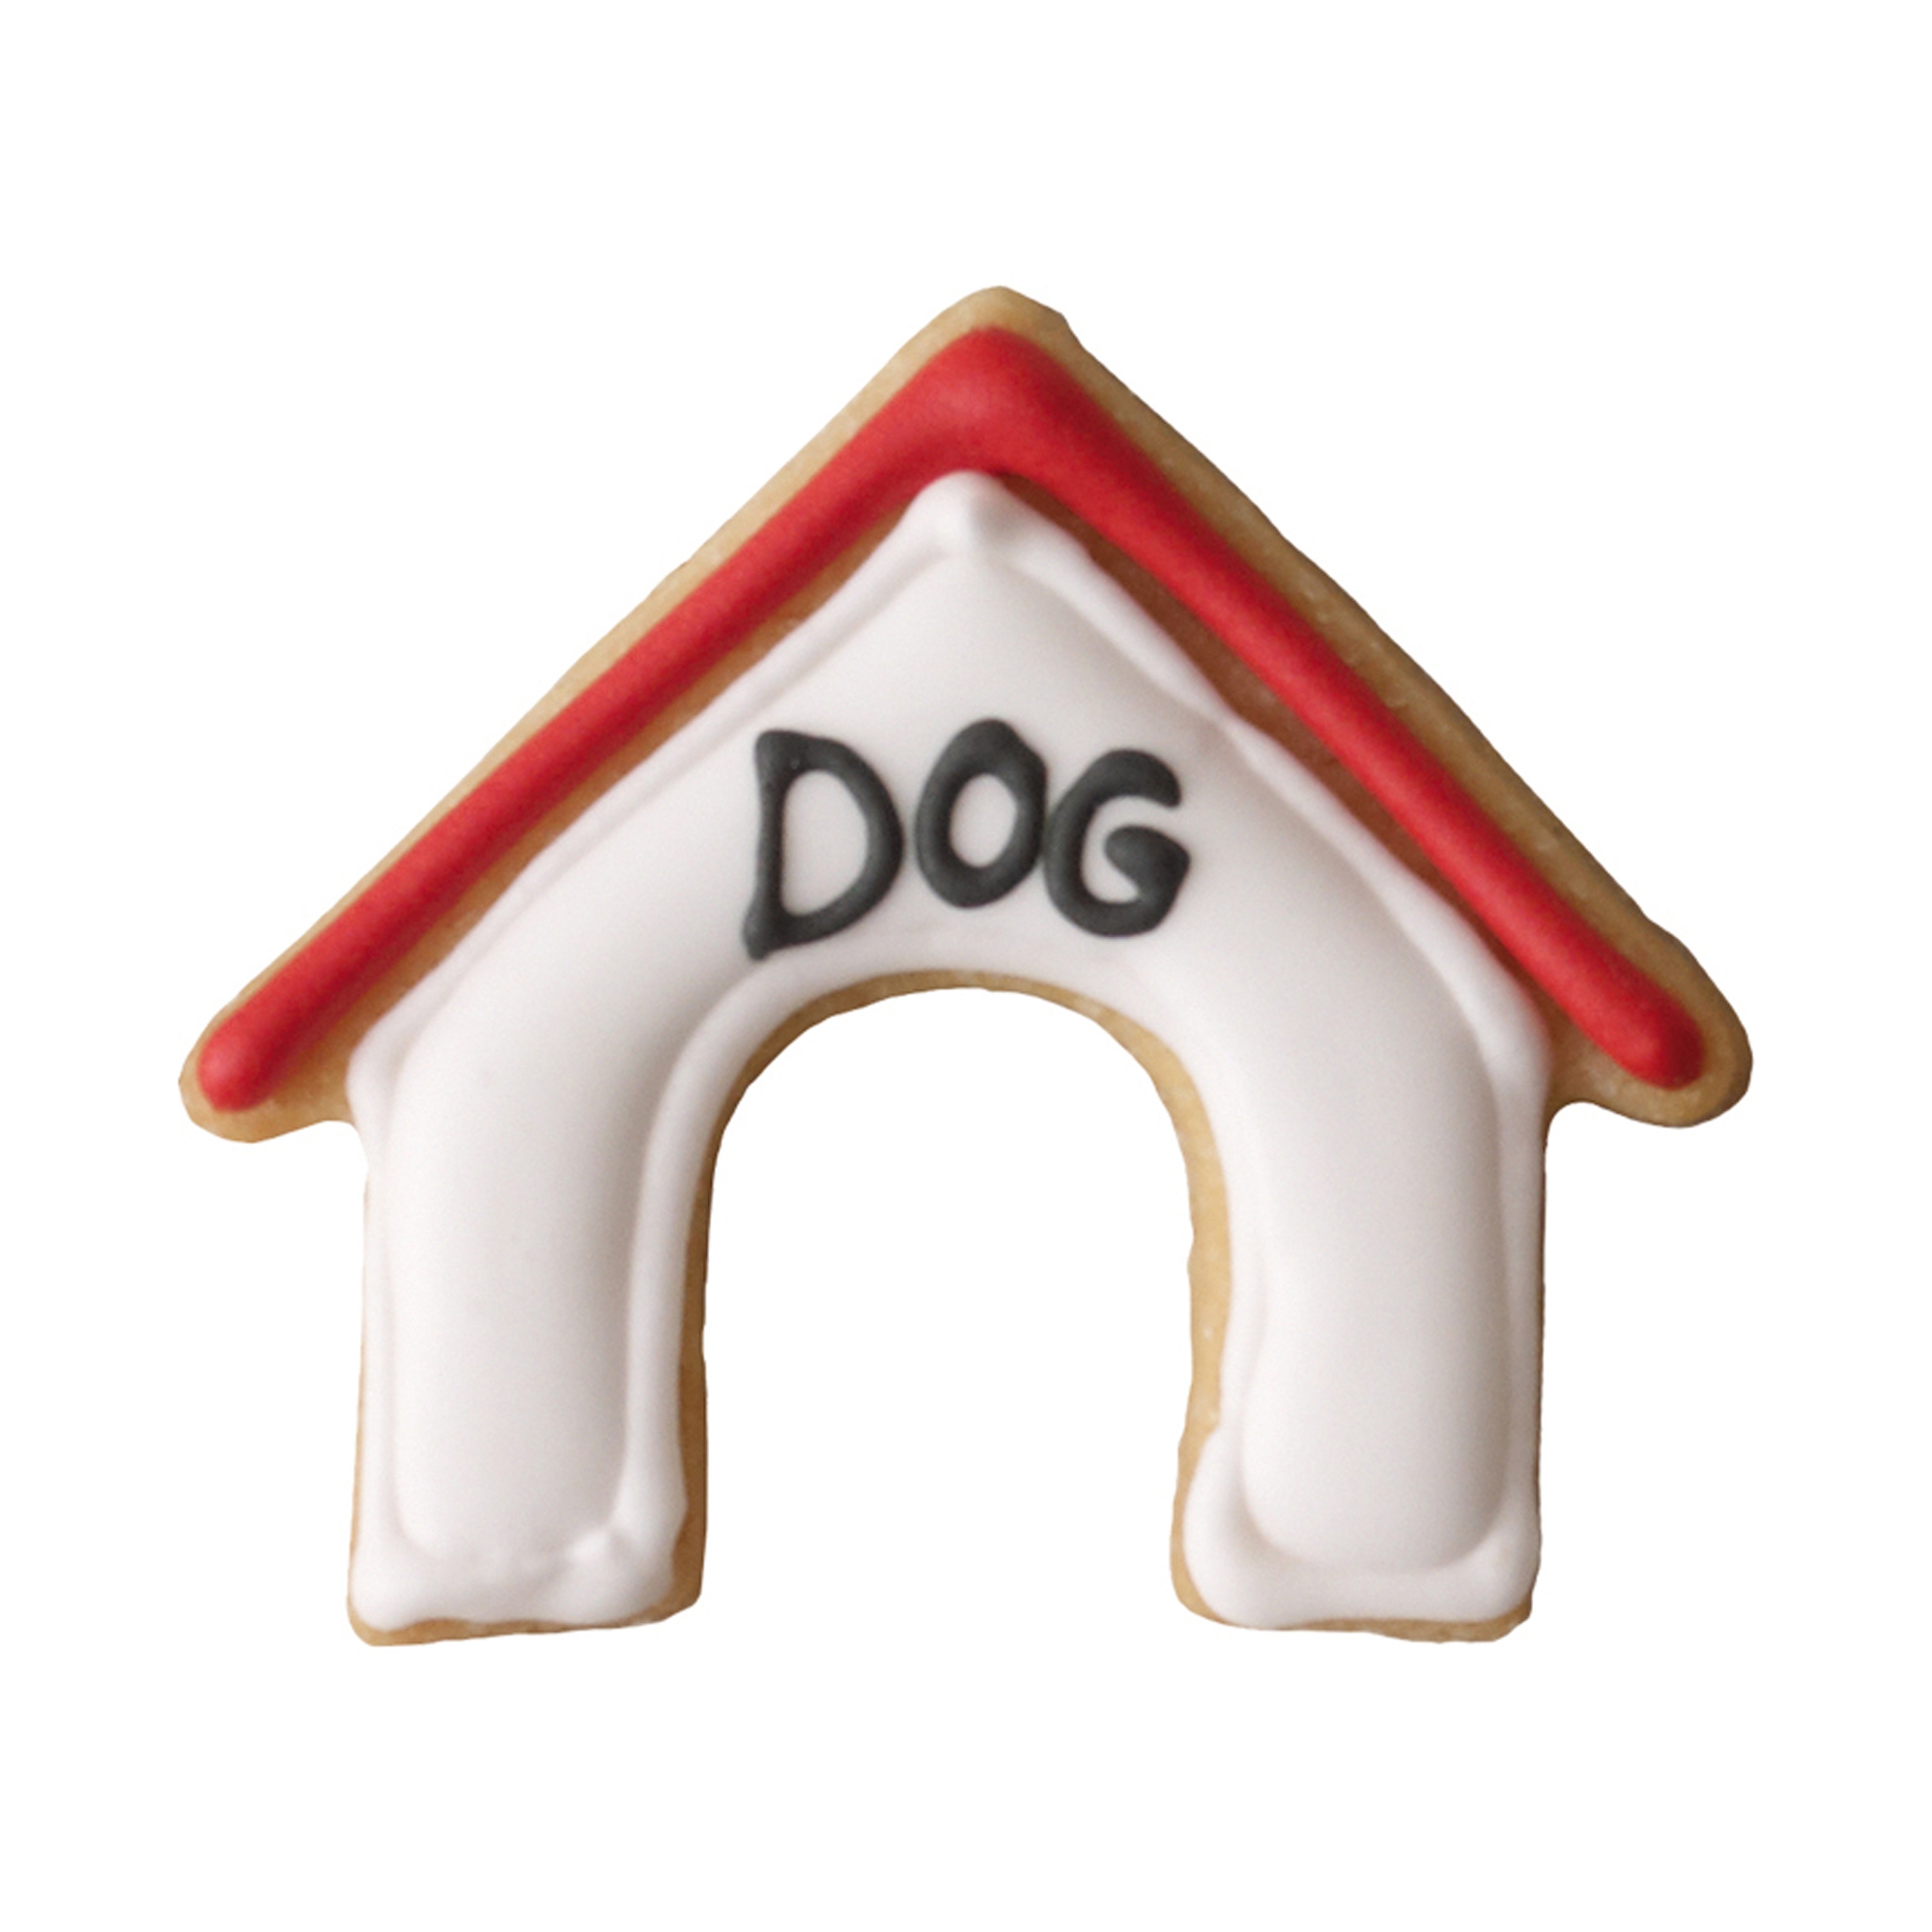 Birkmann - Cookie cutter dog house 6 cm